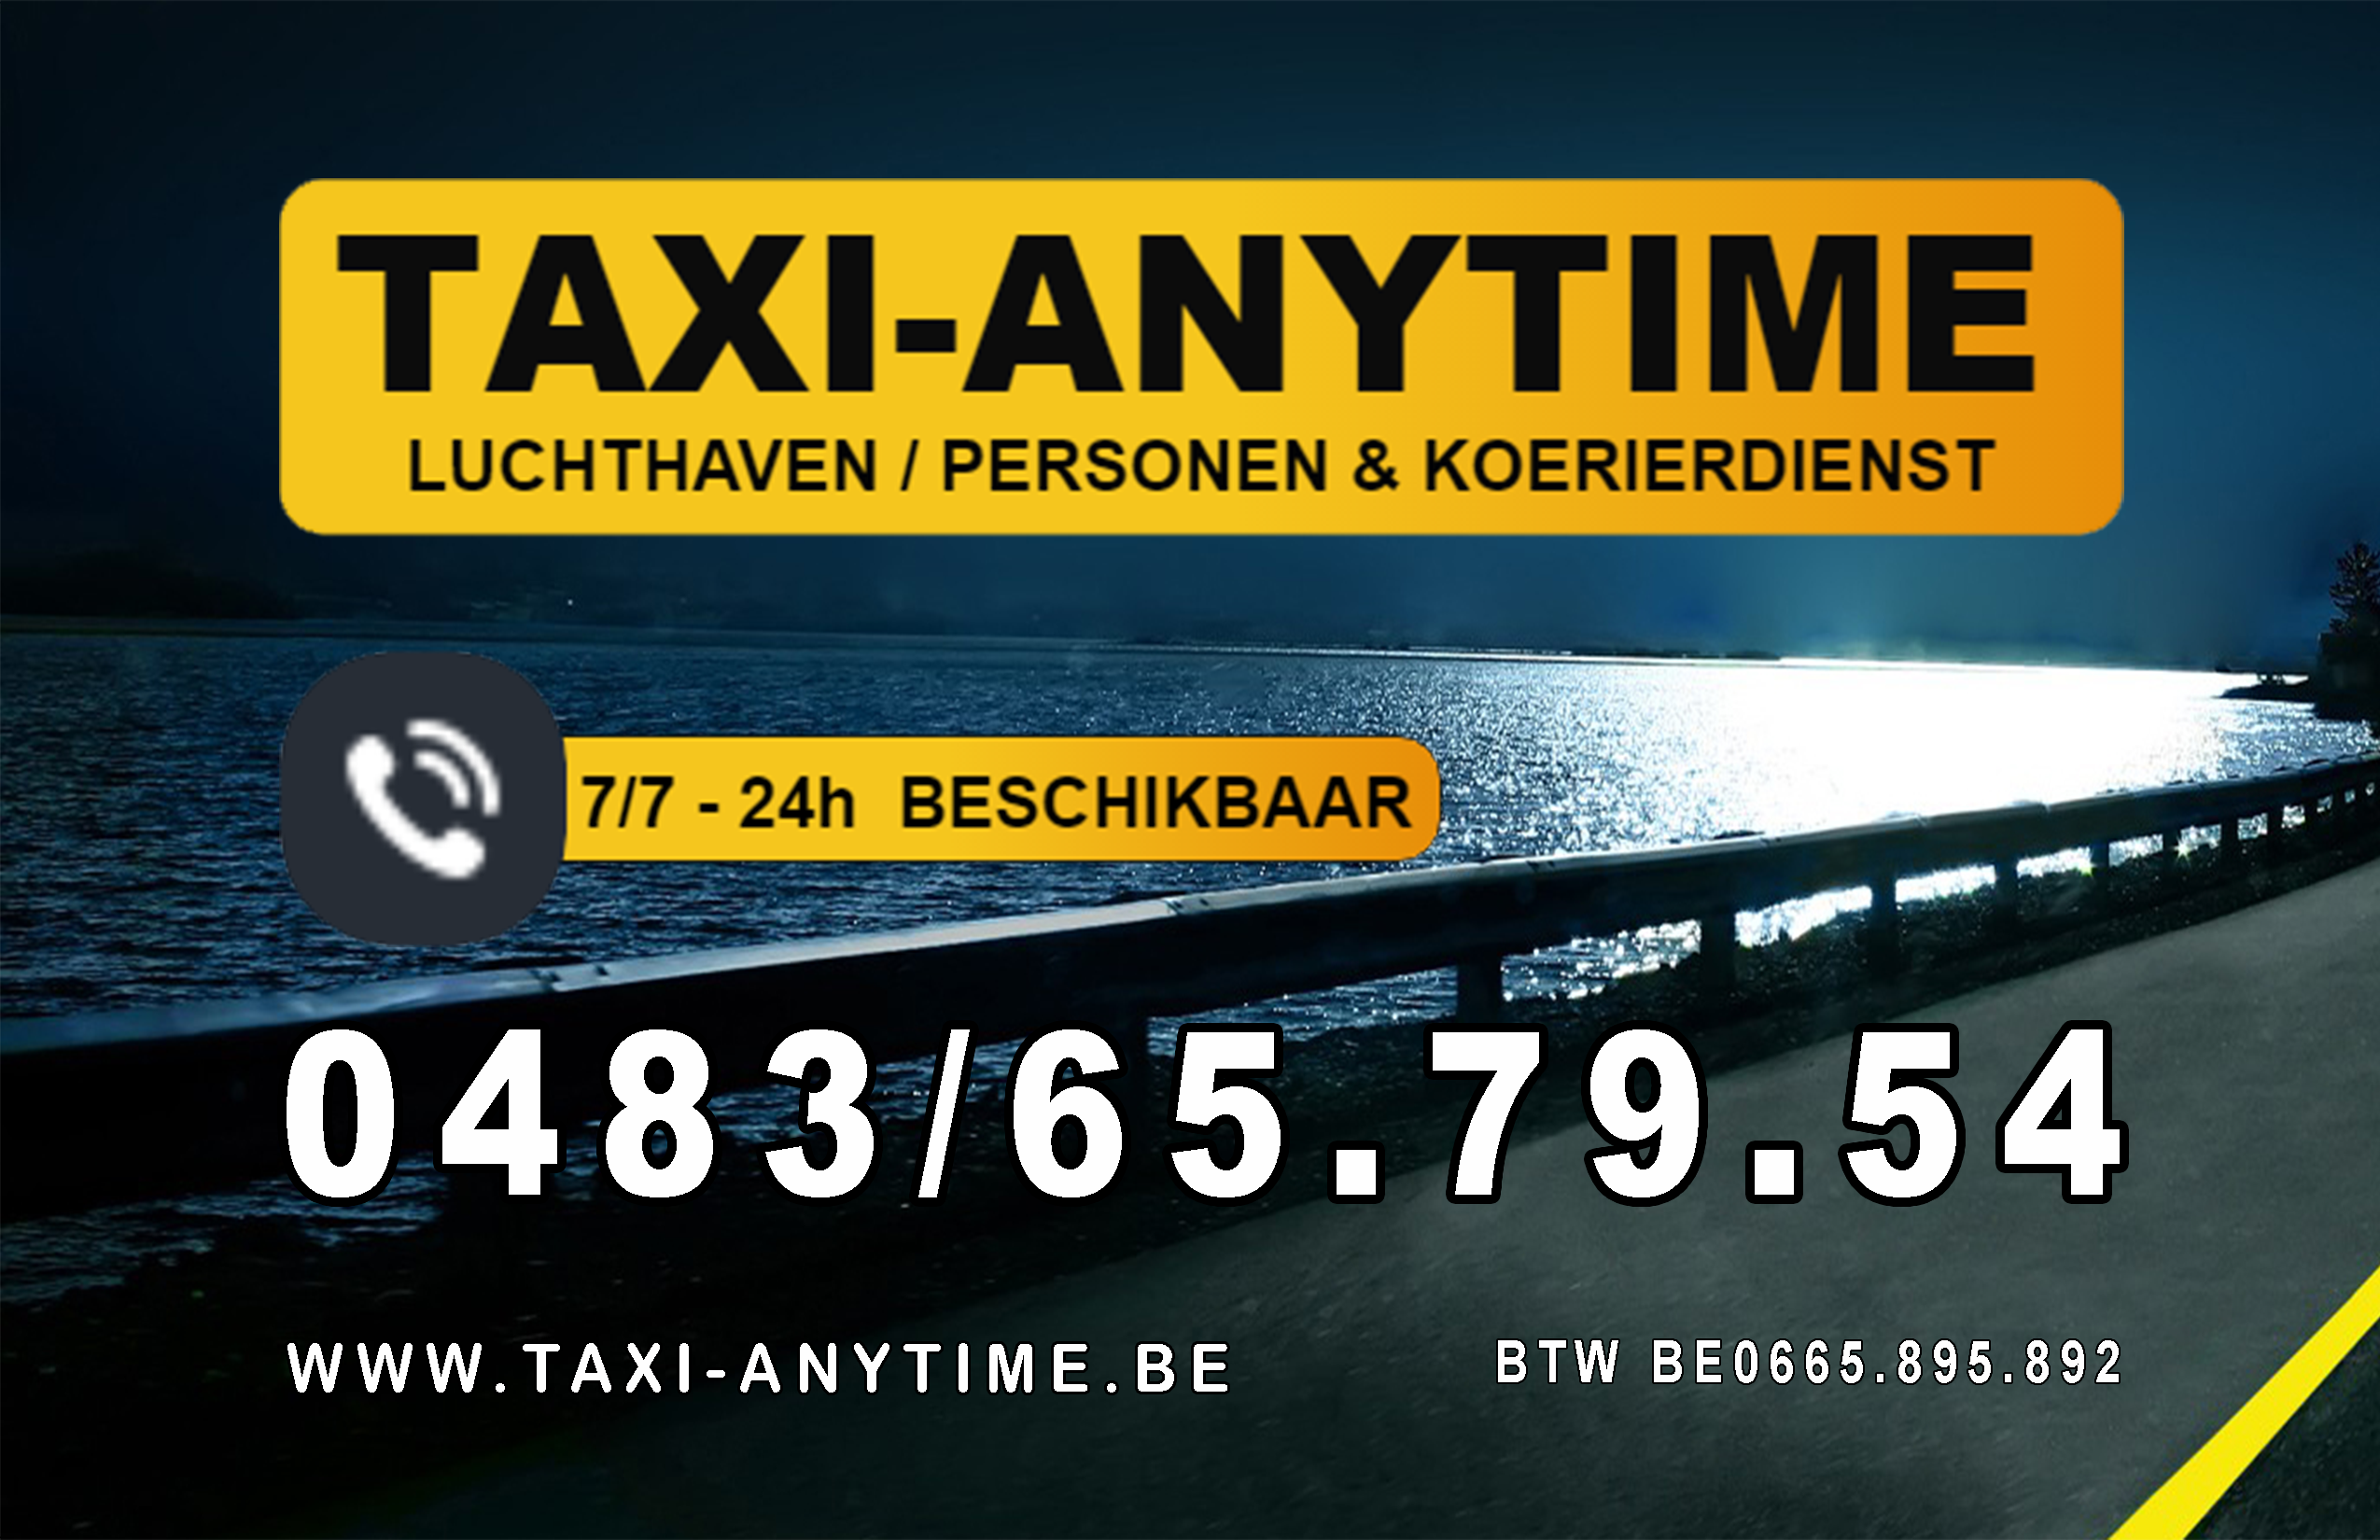 taxibedrijven met luchthavenvervoer Leopoldsburg Taxi-anytime